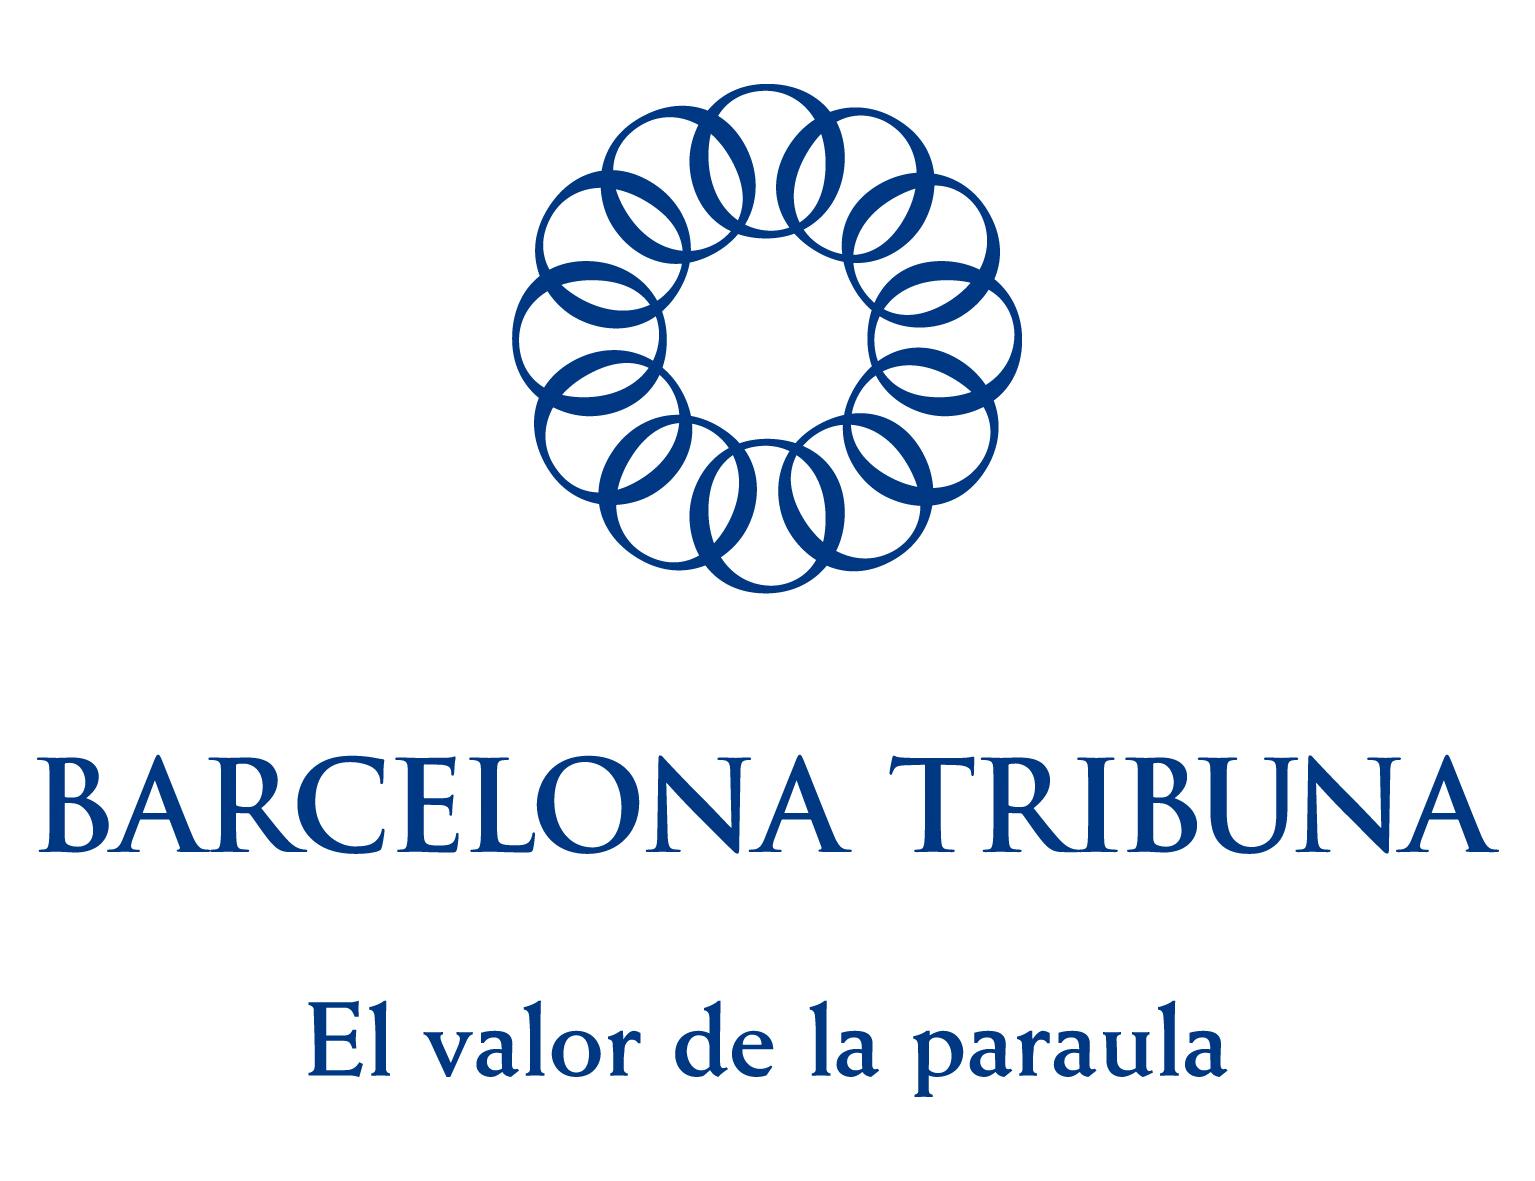 Barcelona Tribuna